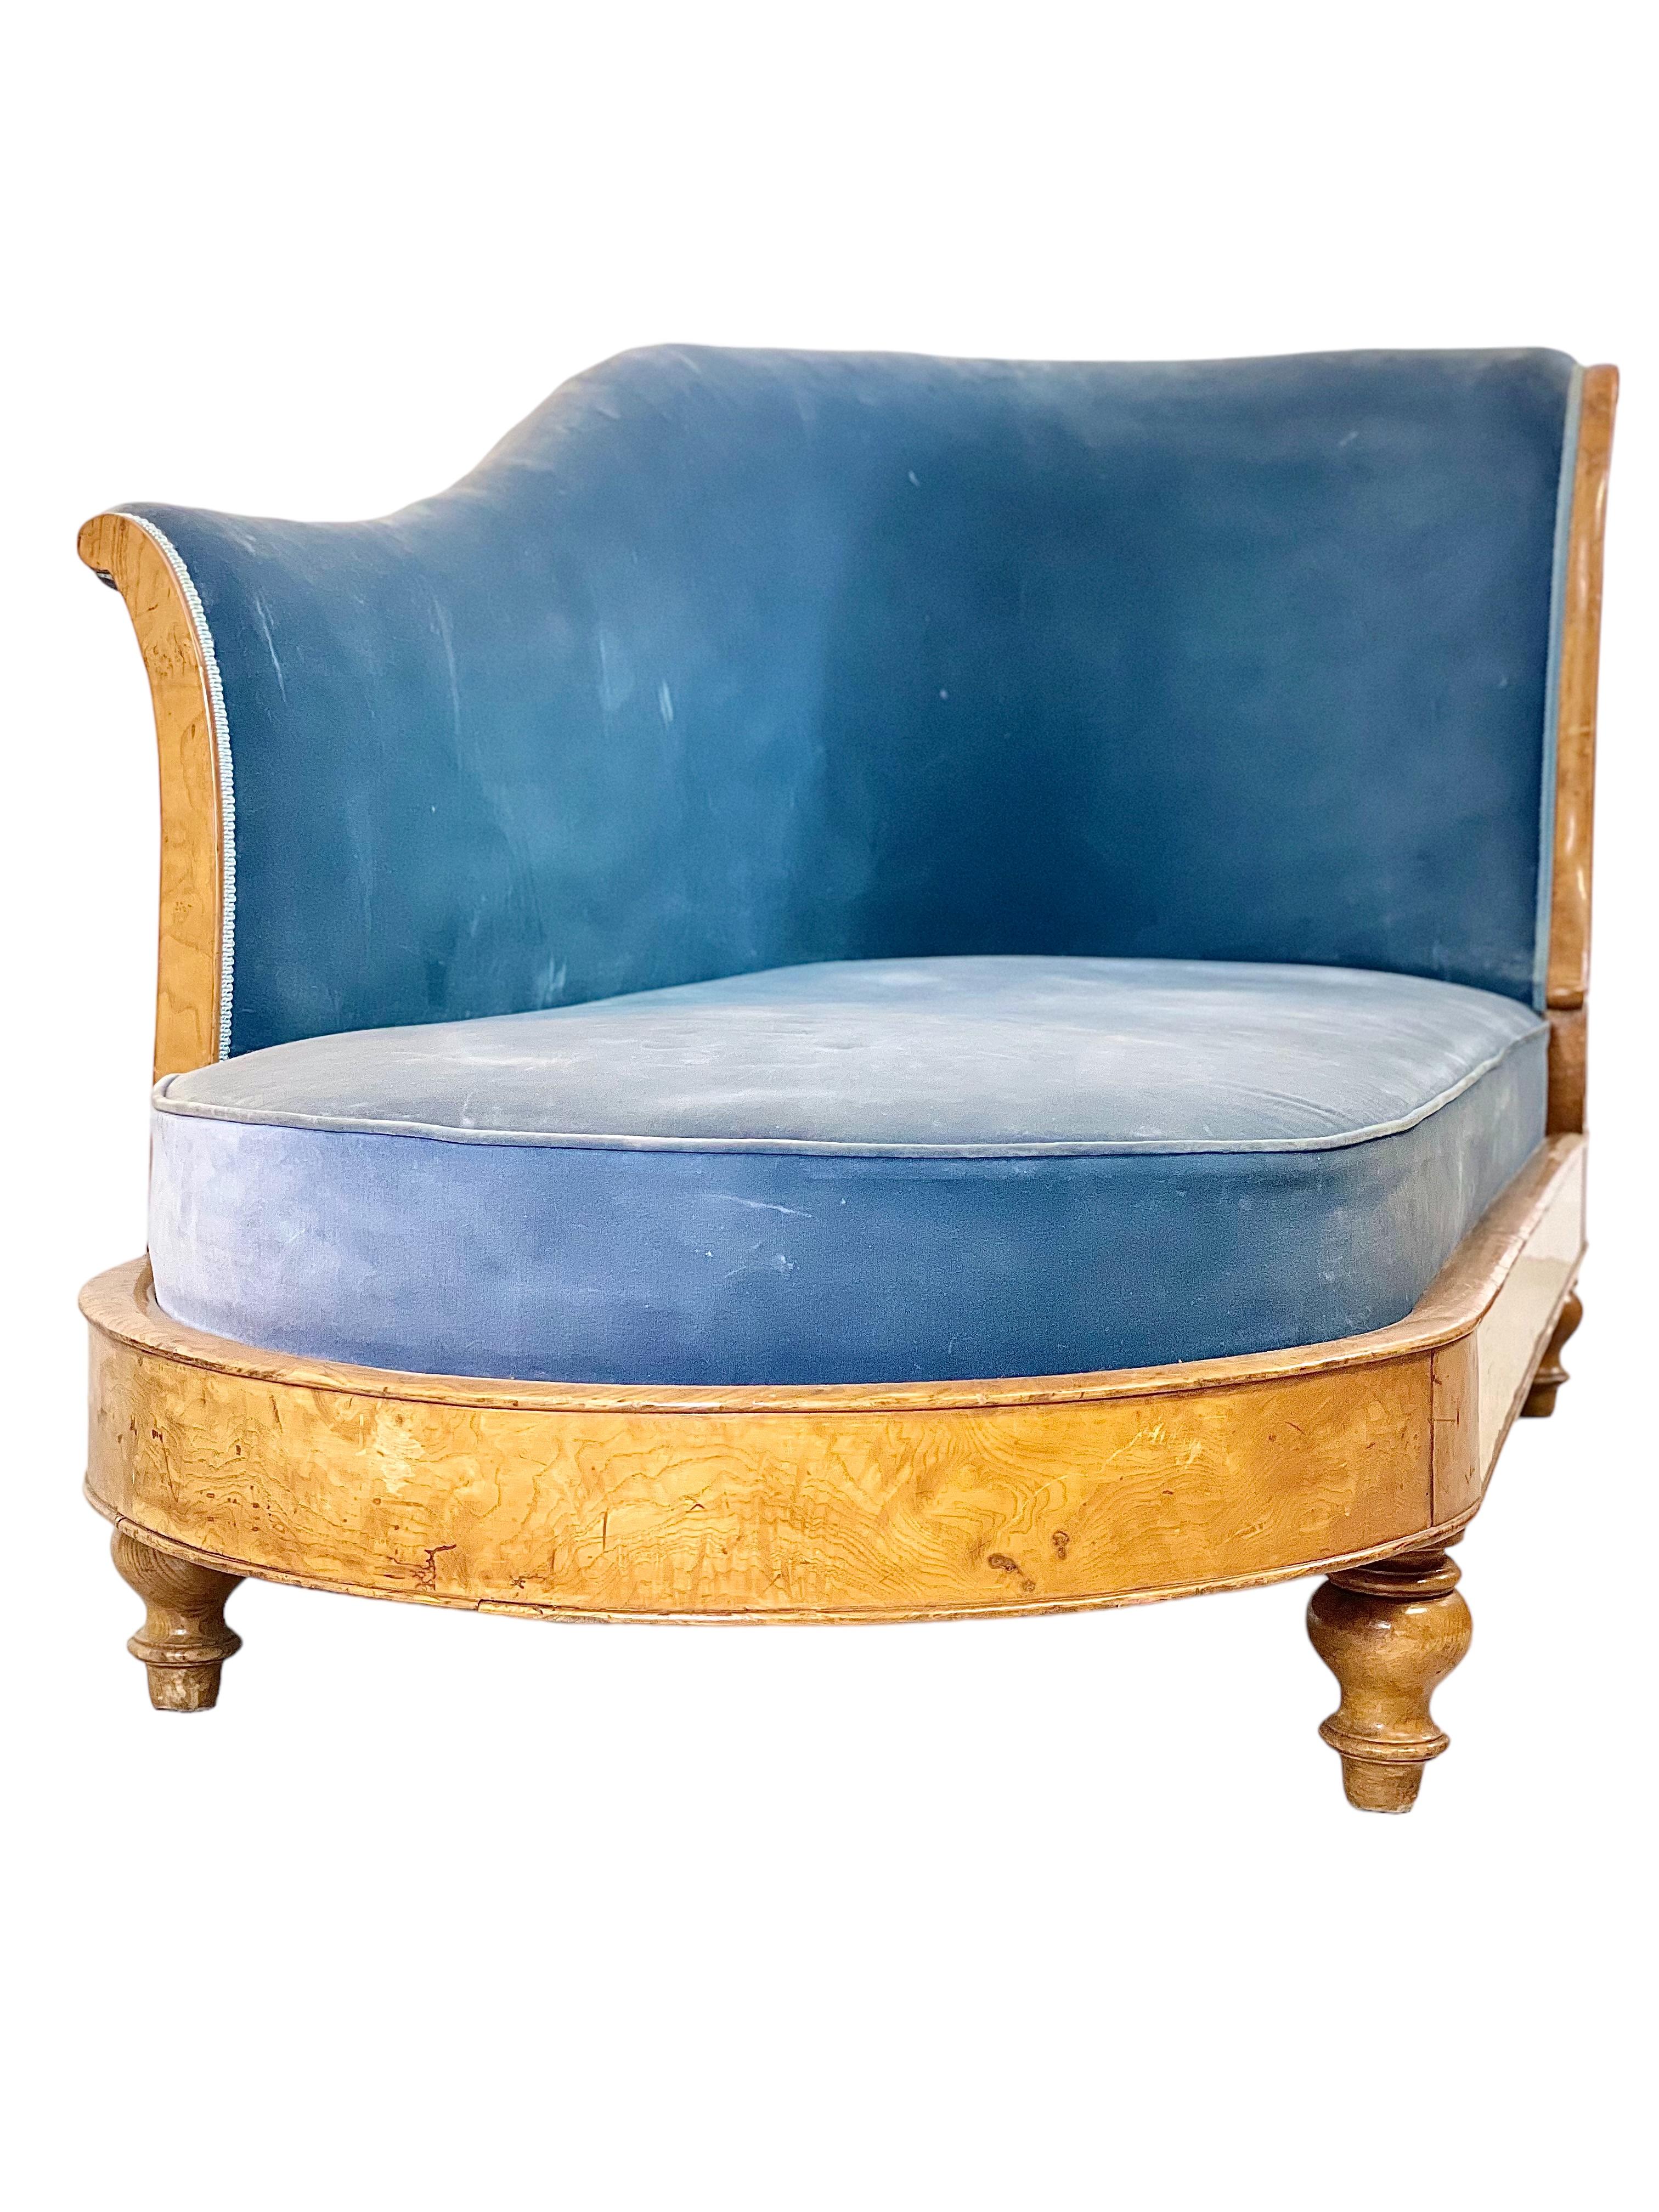 Canapé 'Méridienne' de Charles X, tapissé de velours bleu. Le cadre est plaqué de bois clair, ce qui met en valeur le design simple mais élégant du tablier enveloppant, dont la face avant n'est ornée que d'une seule palmette. Quatre pieds tournés